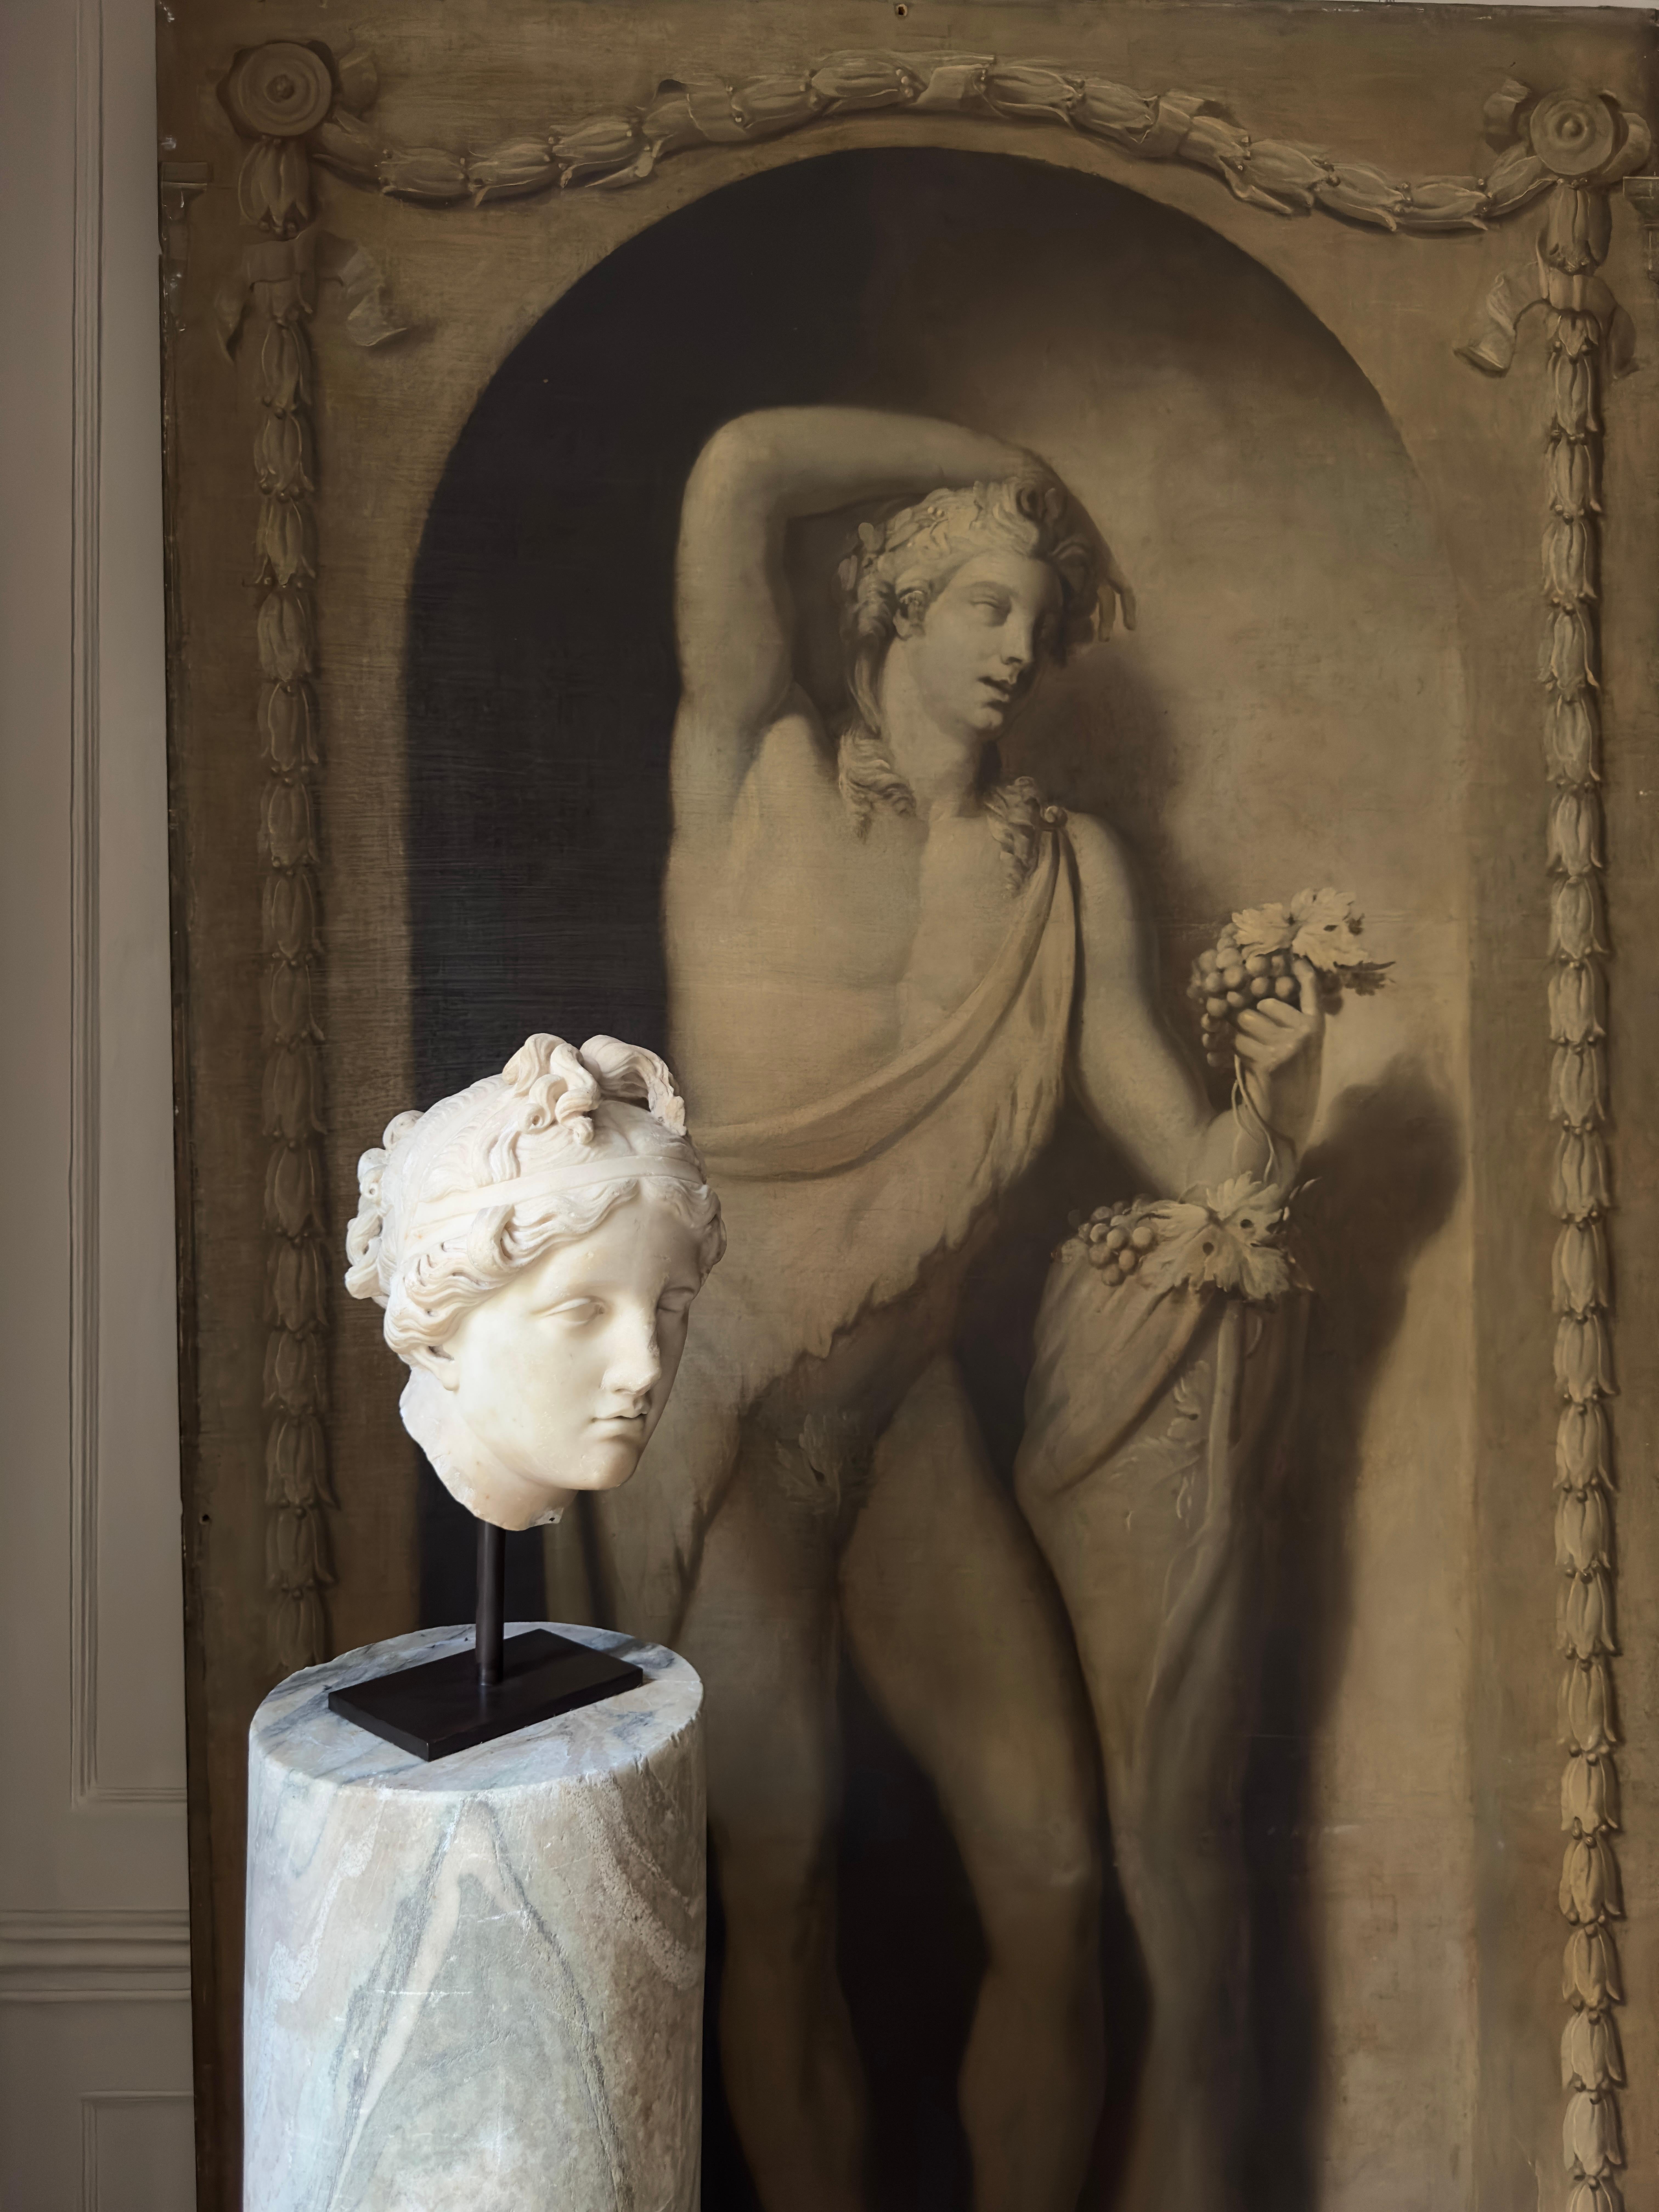 Ein großer Marmorkopf aus dem 18. Jahrhundert oder früher, der die Liebesgöttin Venus darstellt. Lebensgroß und wunderschön geschnitzt, mit hervorragenden Details in ihrem Haar und Gesicht. Wahrscheinlich italienisch und eine frühe Darstellung der